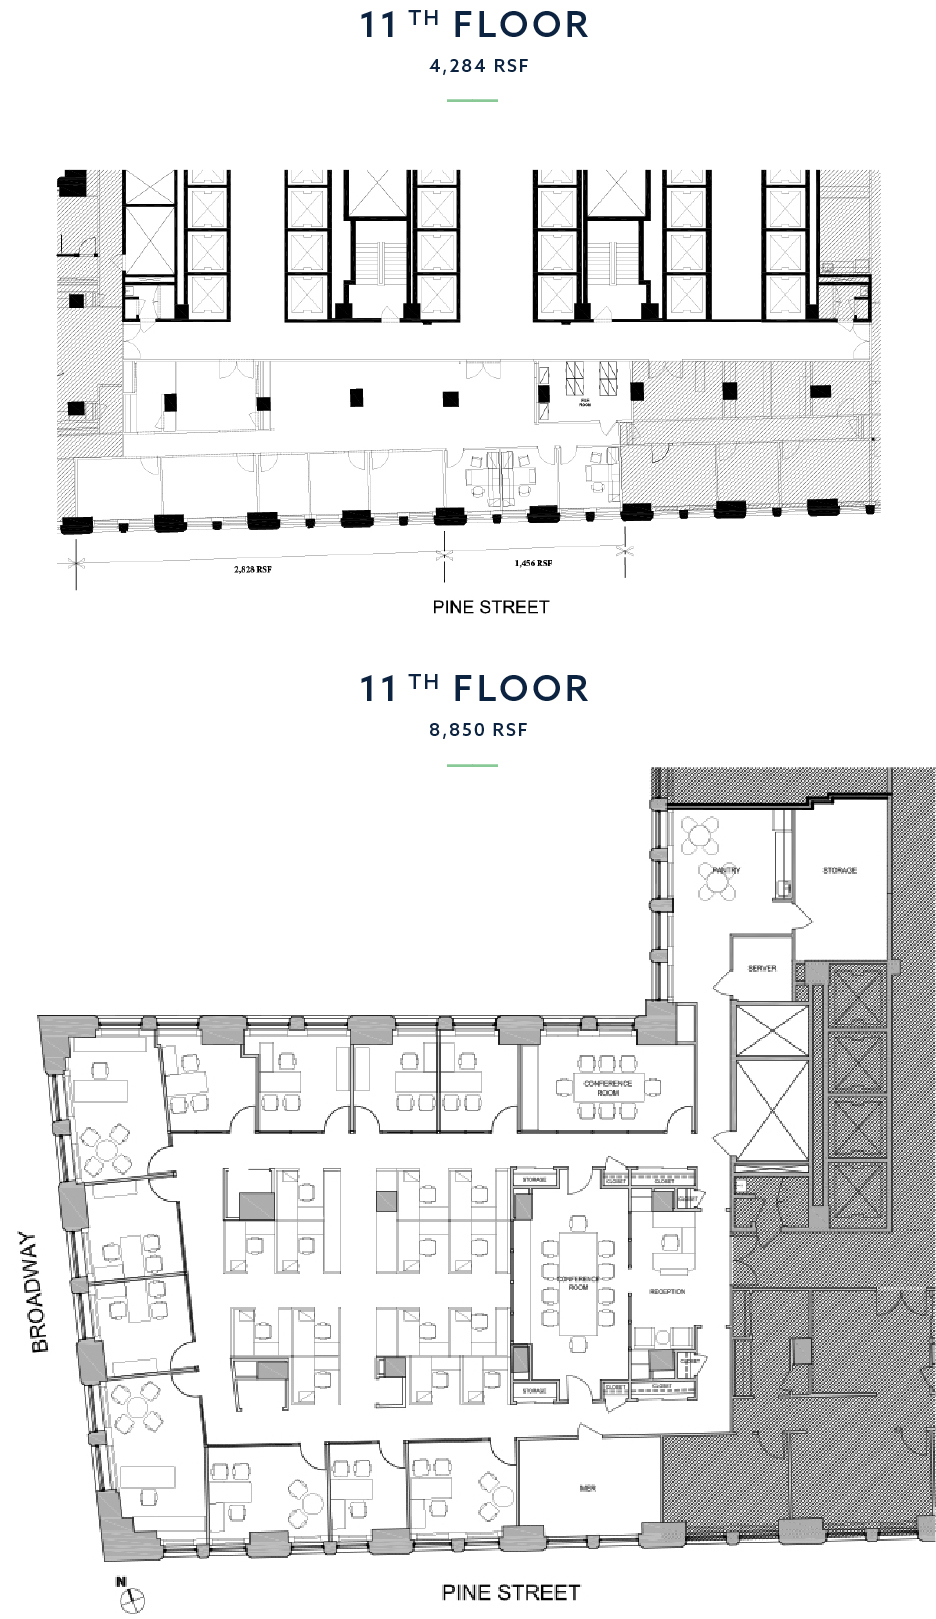 Combined 11th Floor Suites Floorplan